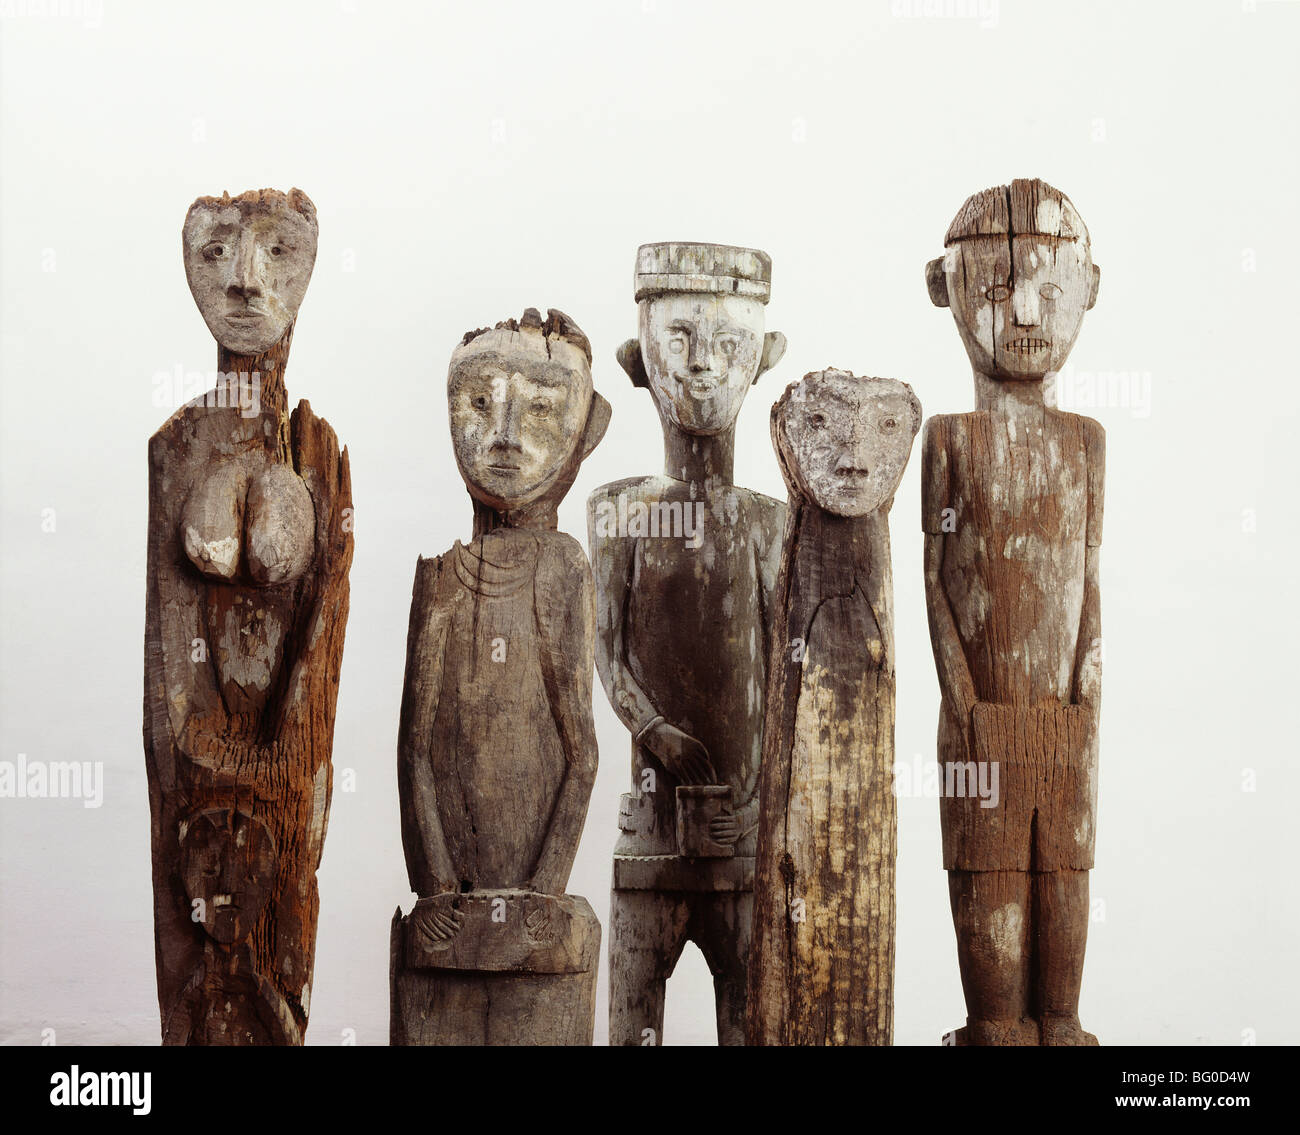 Custode figure scolpite in legno, trovata nei pressi di villaggi per protezione da spiriti cattivi, Sarawak, Borneo, Malaysia Foto Stock